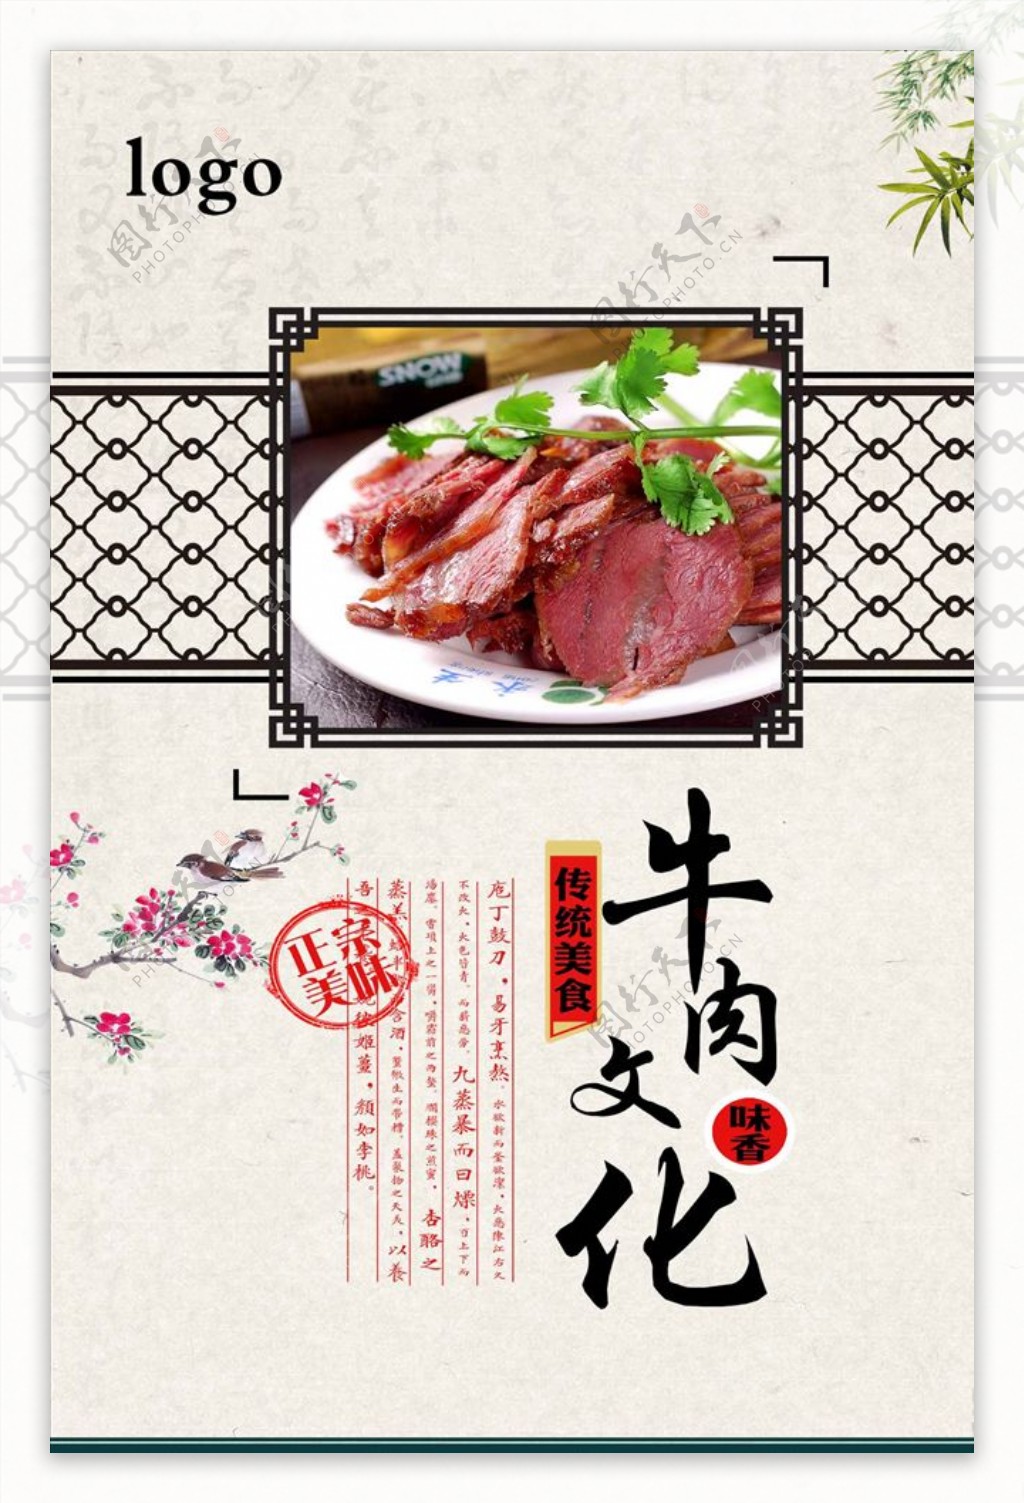 中国风高清牛肉文化宣传海报设计